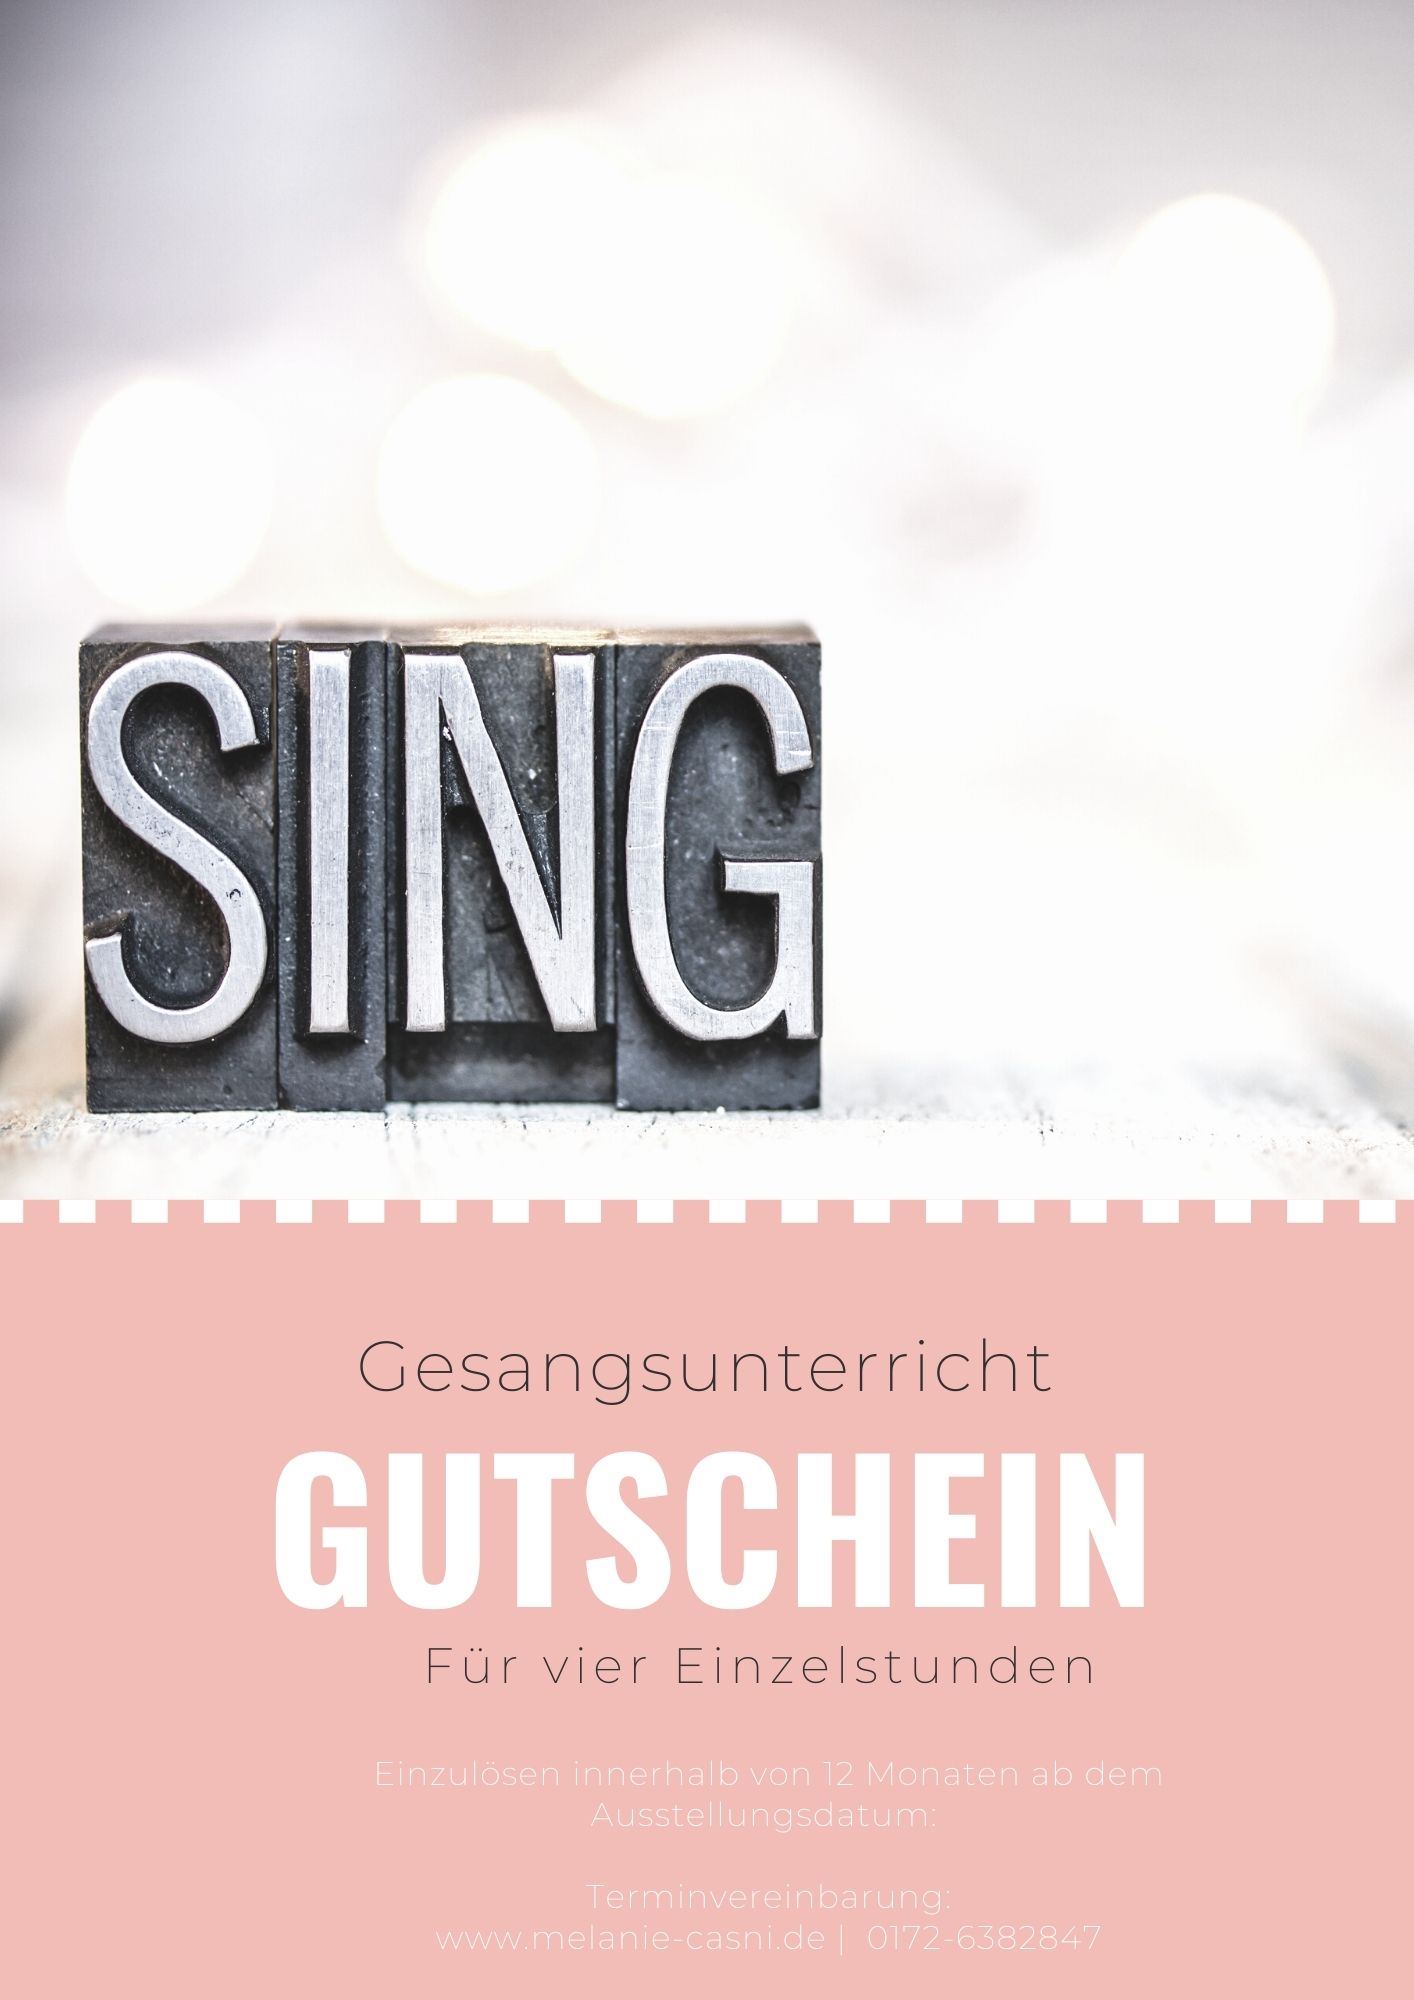 Geschenk - Gutschein Gesangsunterricht Ludwigsburg